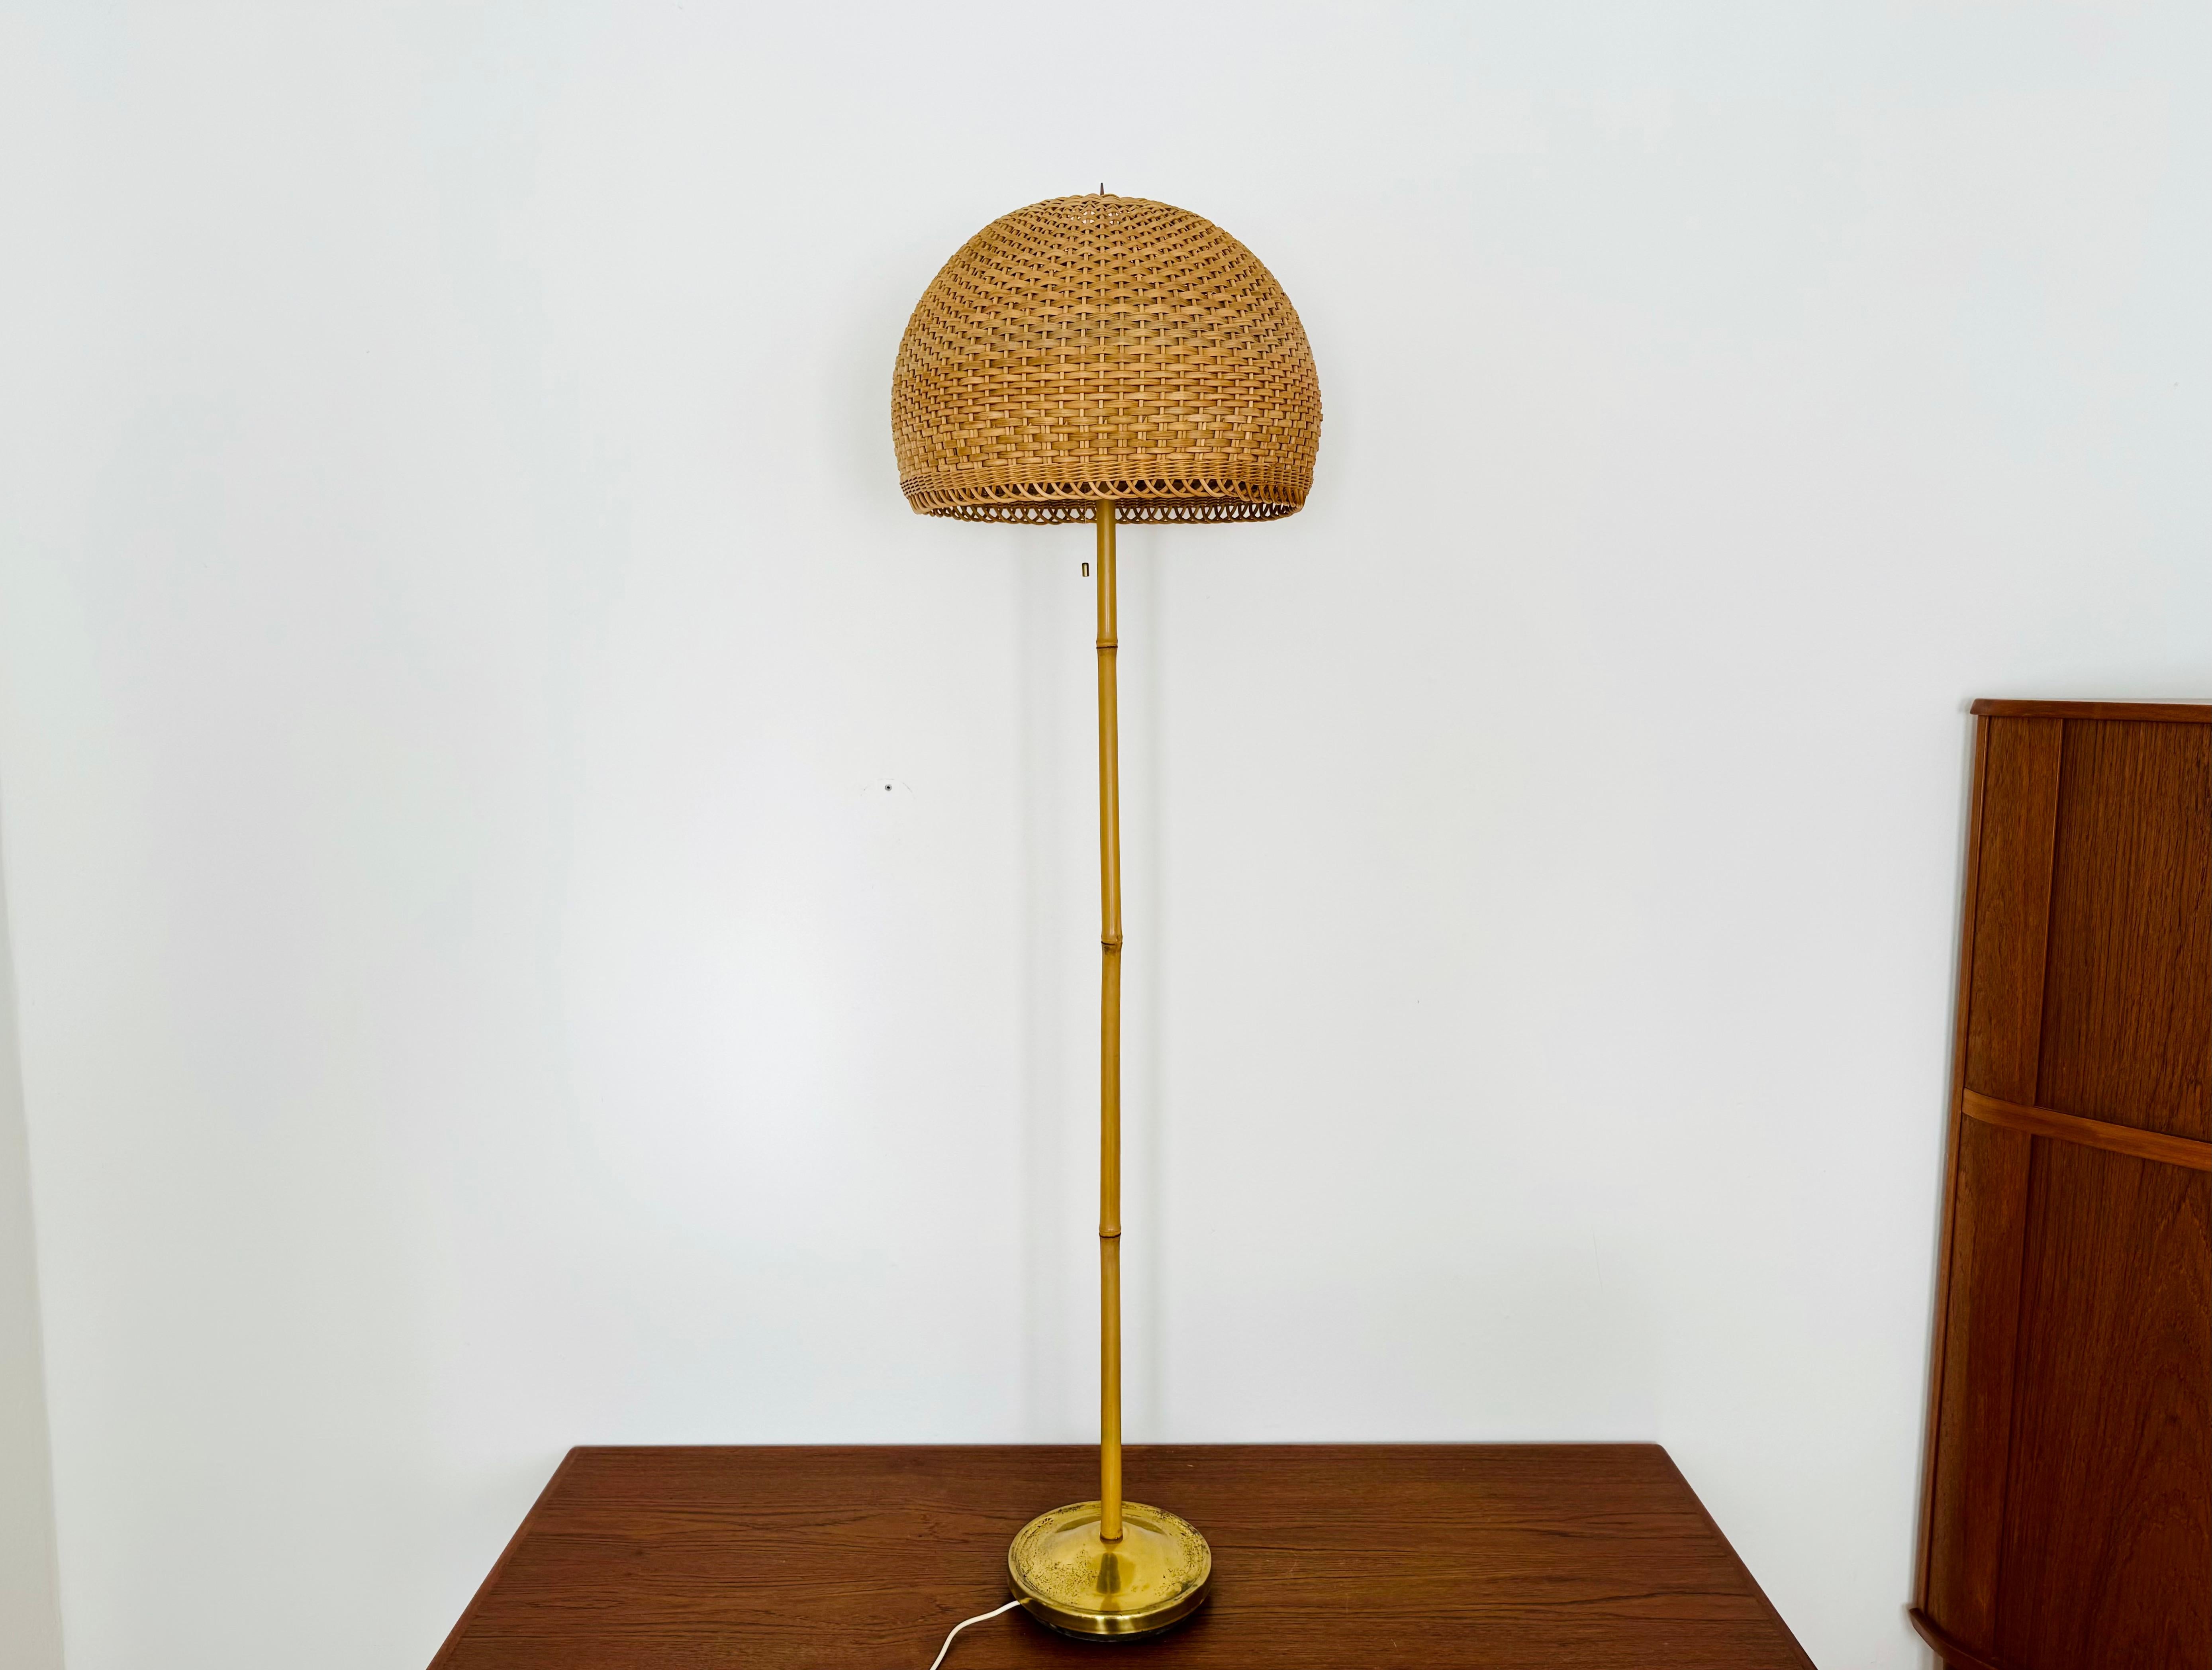 Sehr schöne Rattan-Stehlampe mit Bambusstab aus den 1950er Jahren.
Außergewöhnliches Design und hochwertige Verarbeitung.
Die liebevollen Details und der sehr angenehme Lichteffekt machen die Lampe zu etwas Besonderem und einem echten